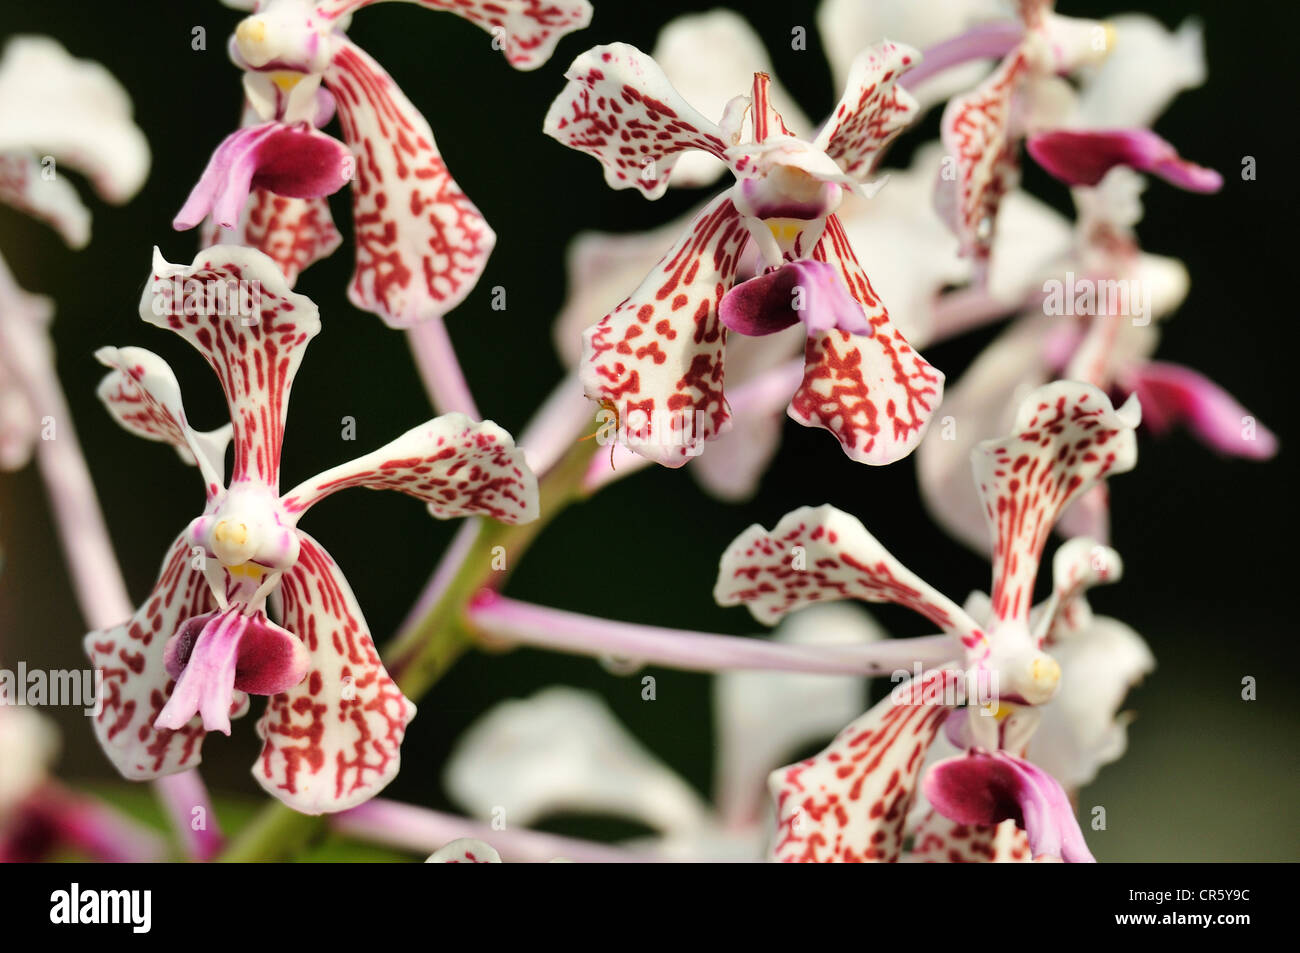 Orchidee, Bali Botanischer Garten Bedugul, Indonesien, Asien Stockfoto